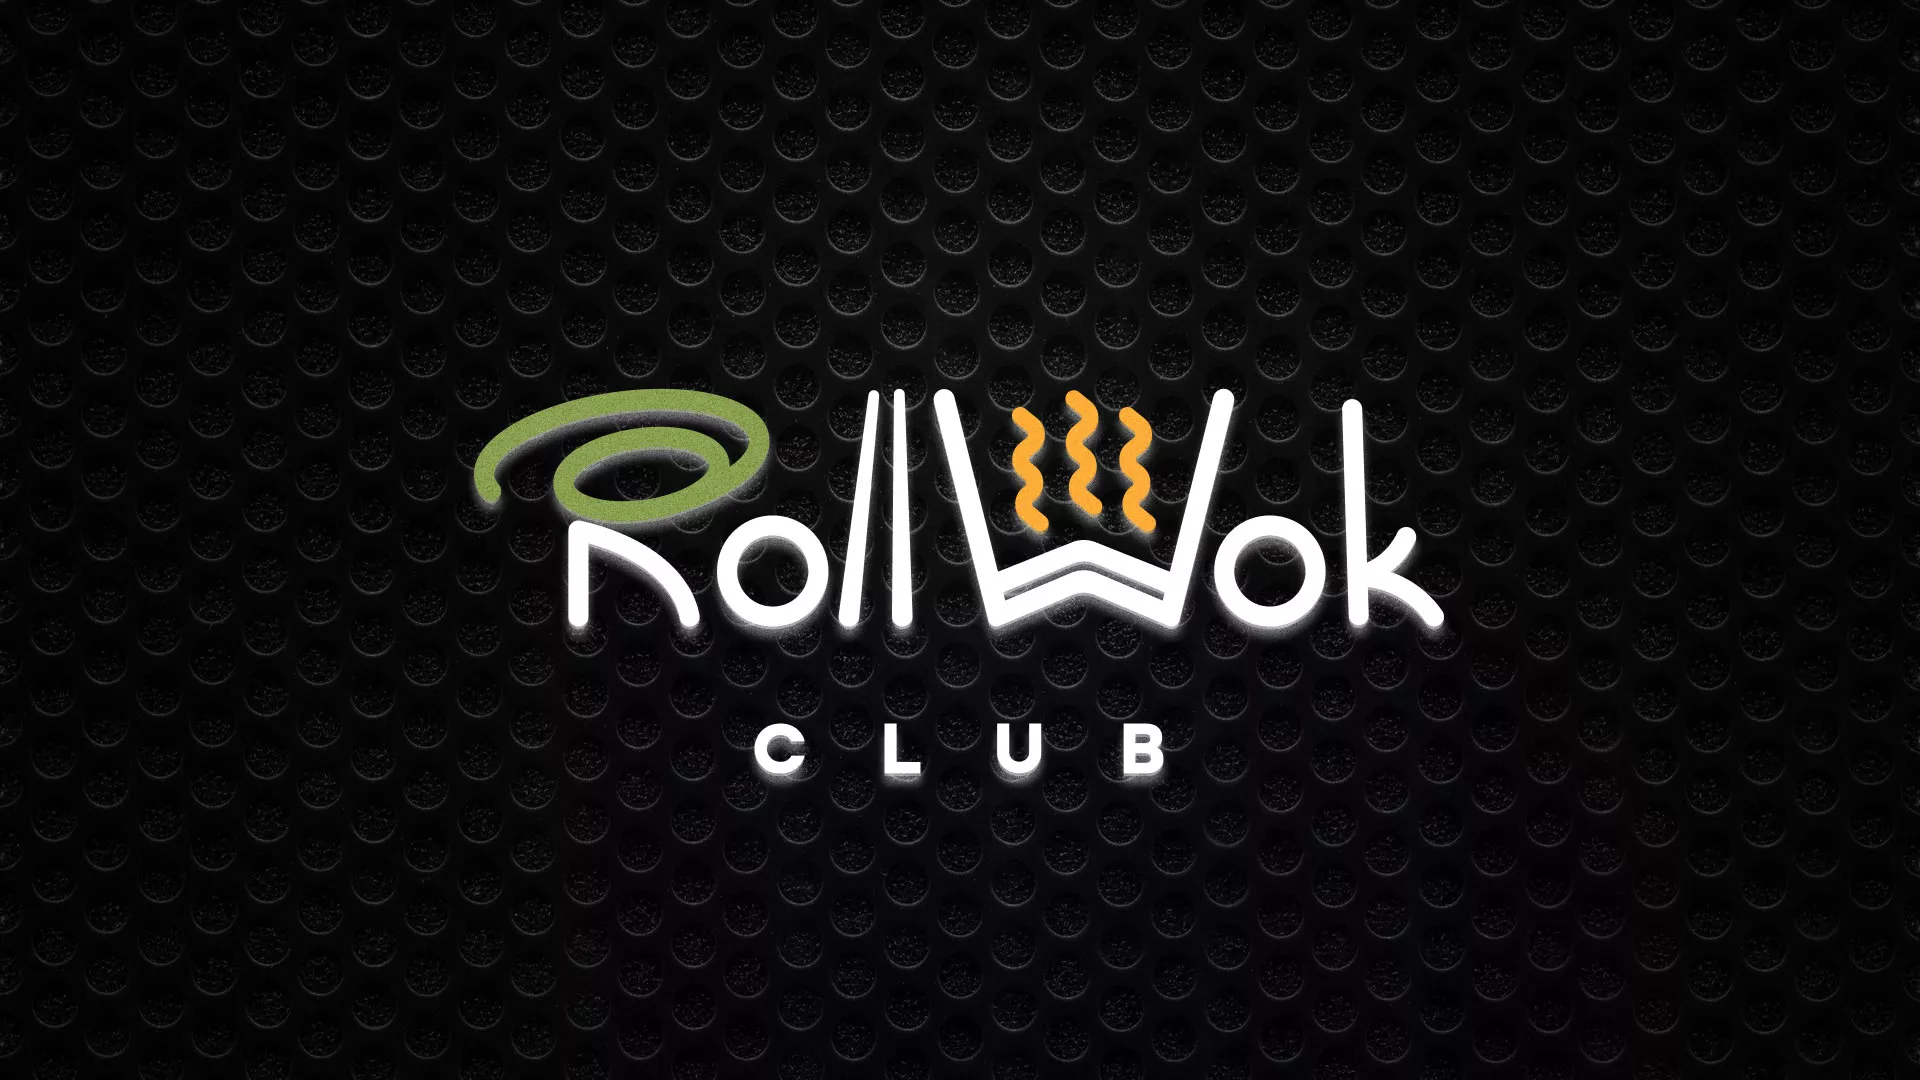 Брендирование торговых точек суши-бара «Roll Wok Club» в Славгороде